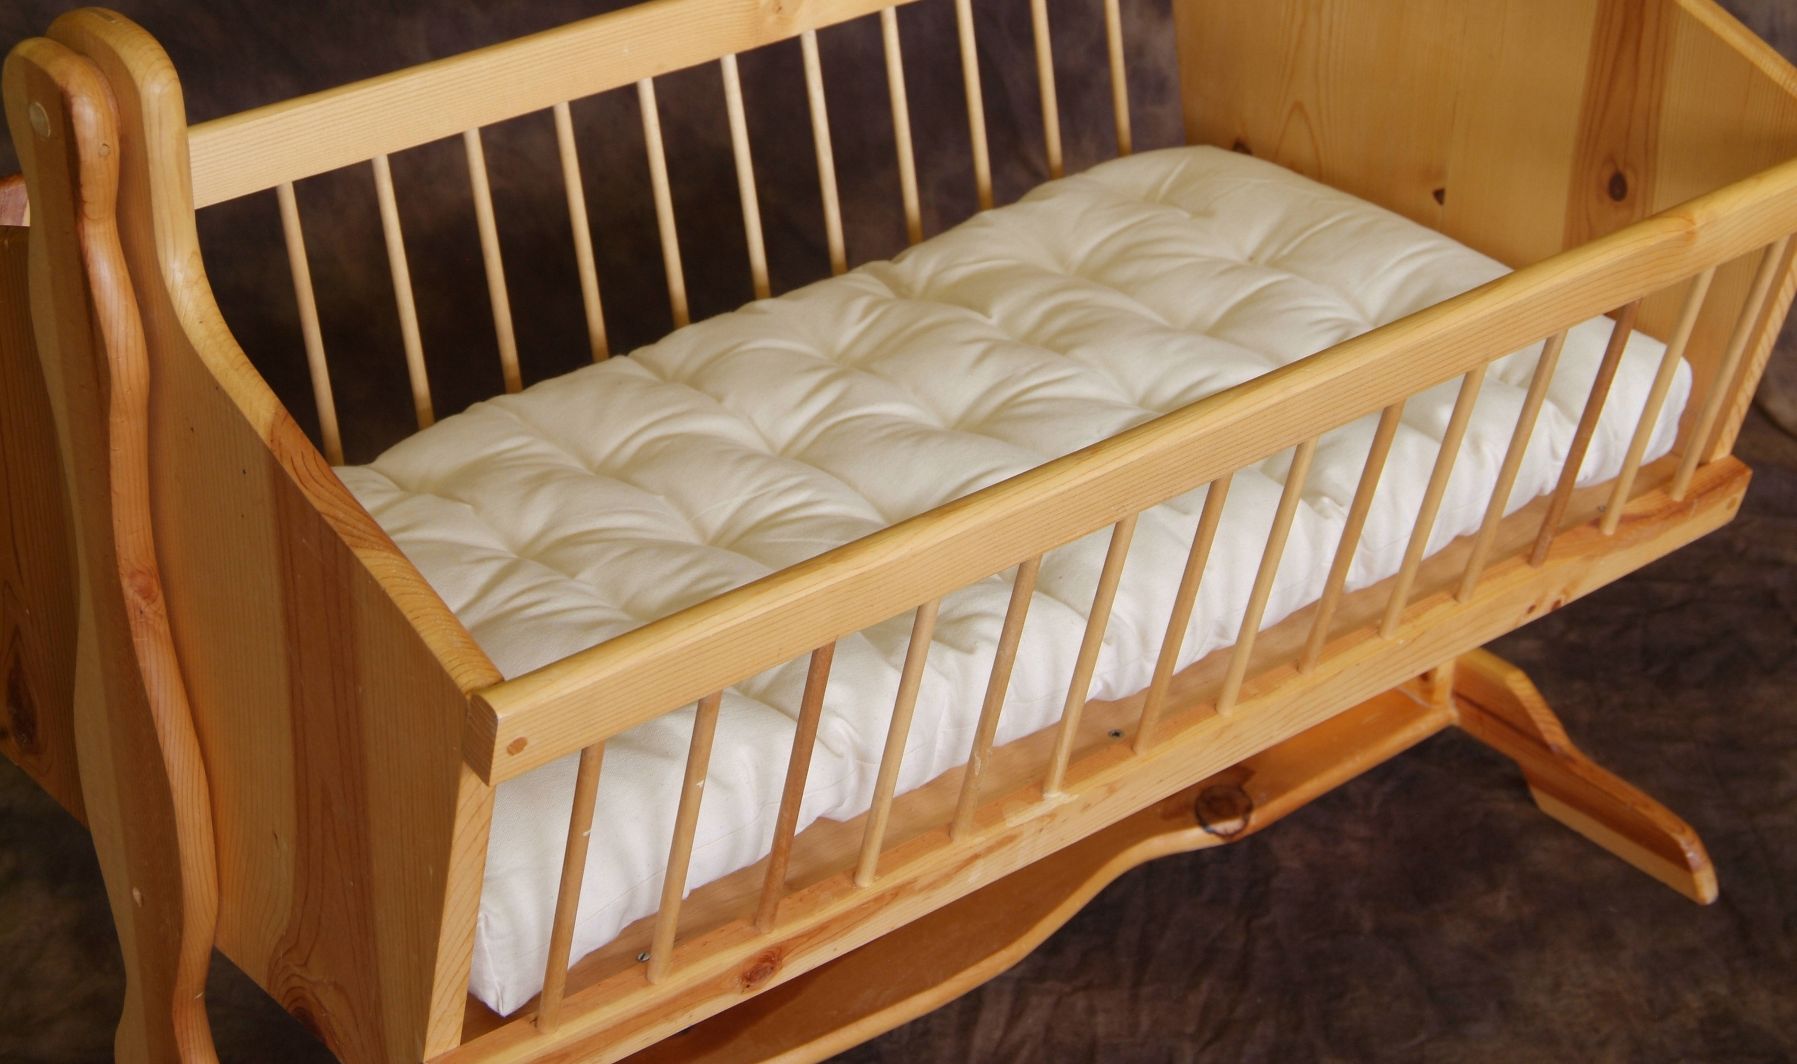 bassinet mattress pads reviews